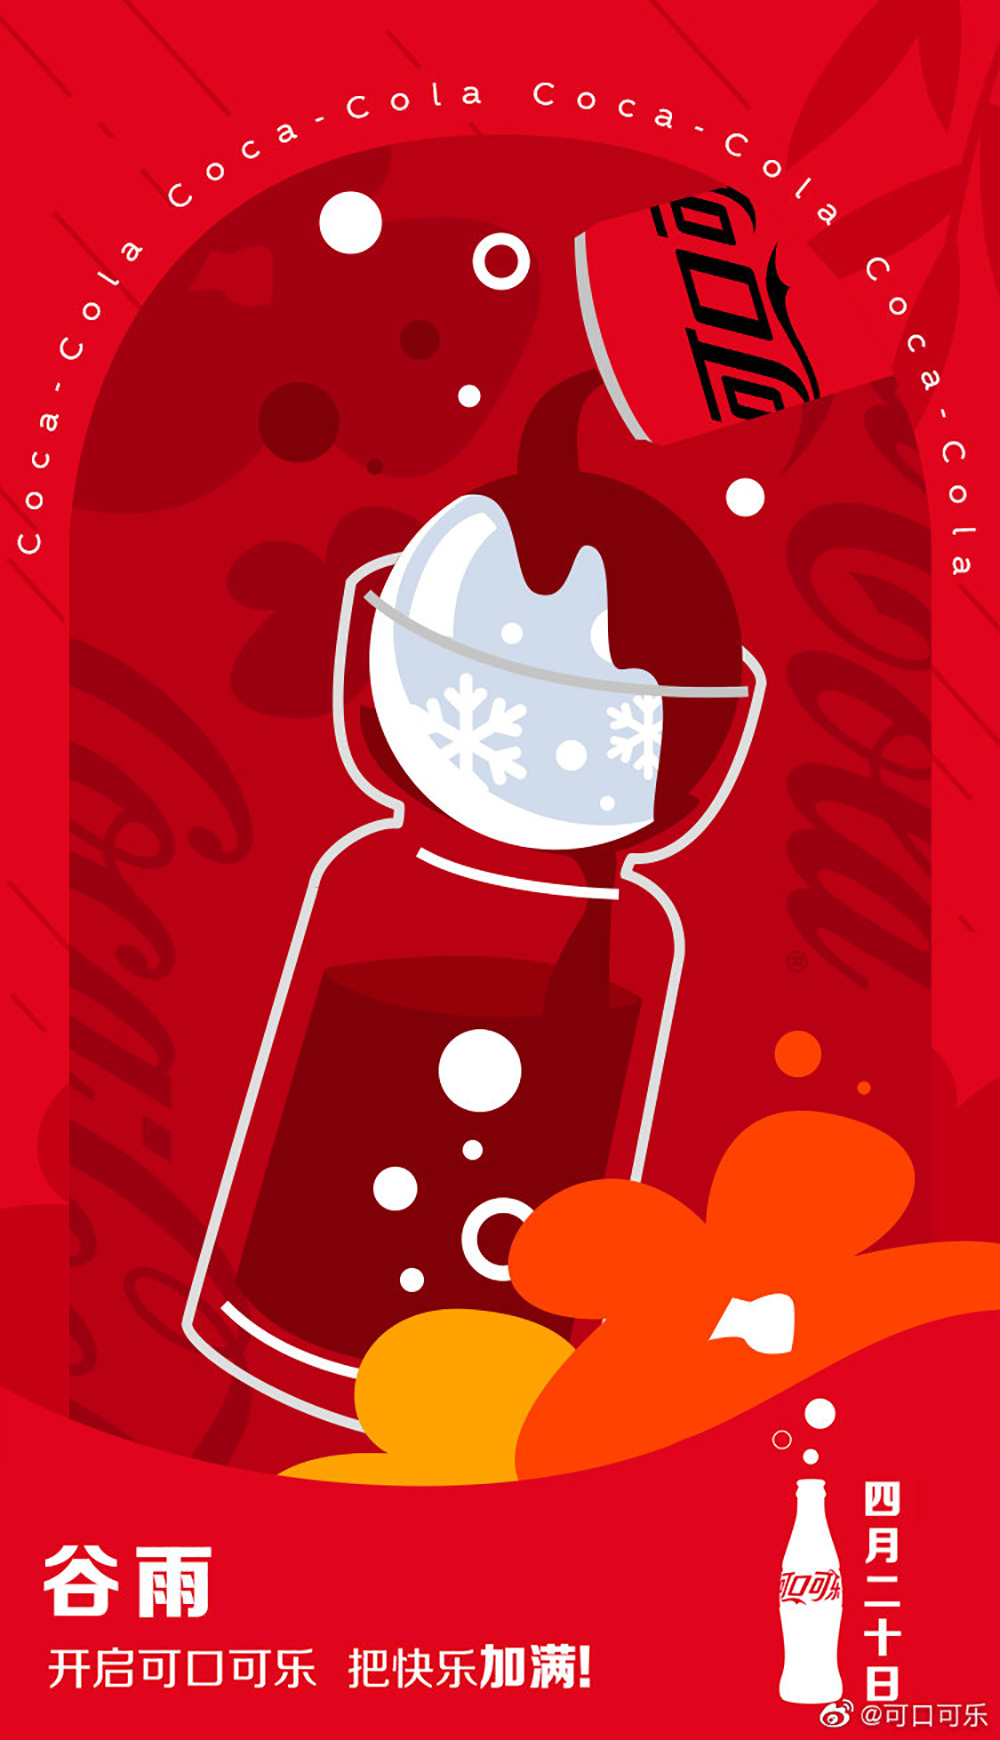 可口可乐 商业海报 红色 营销海报